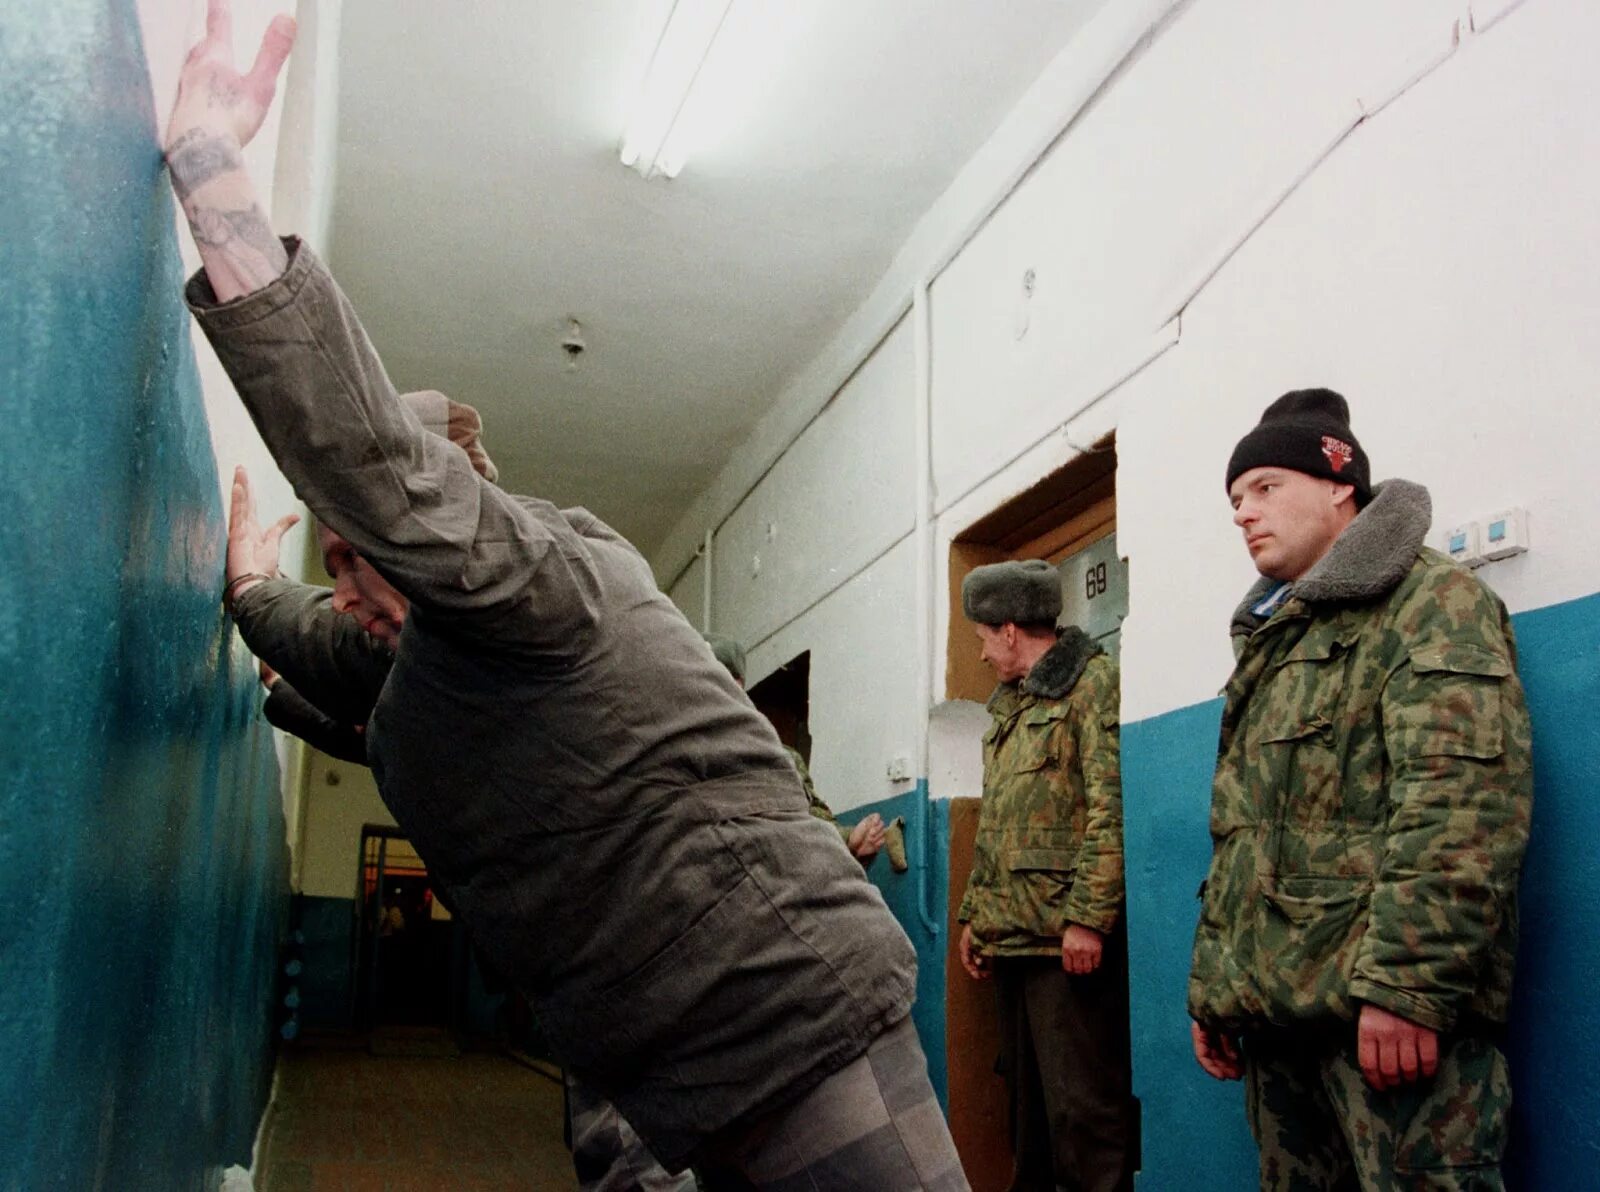 Последний день заключенного. Тюрьма. Тюрьма в России.